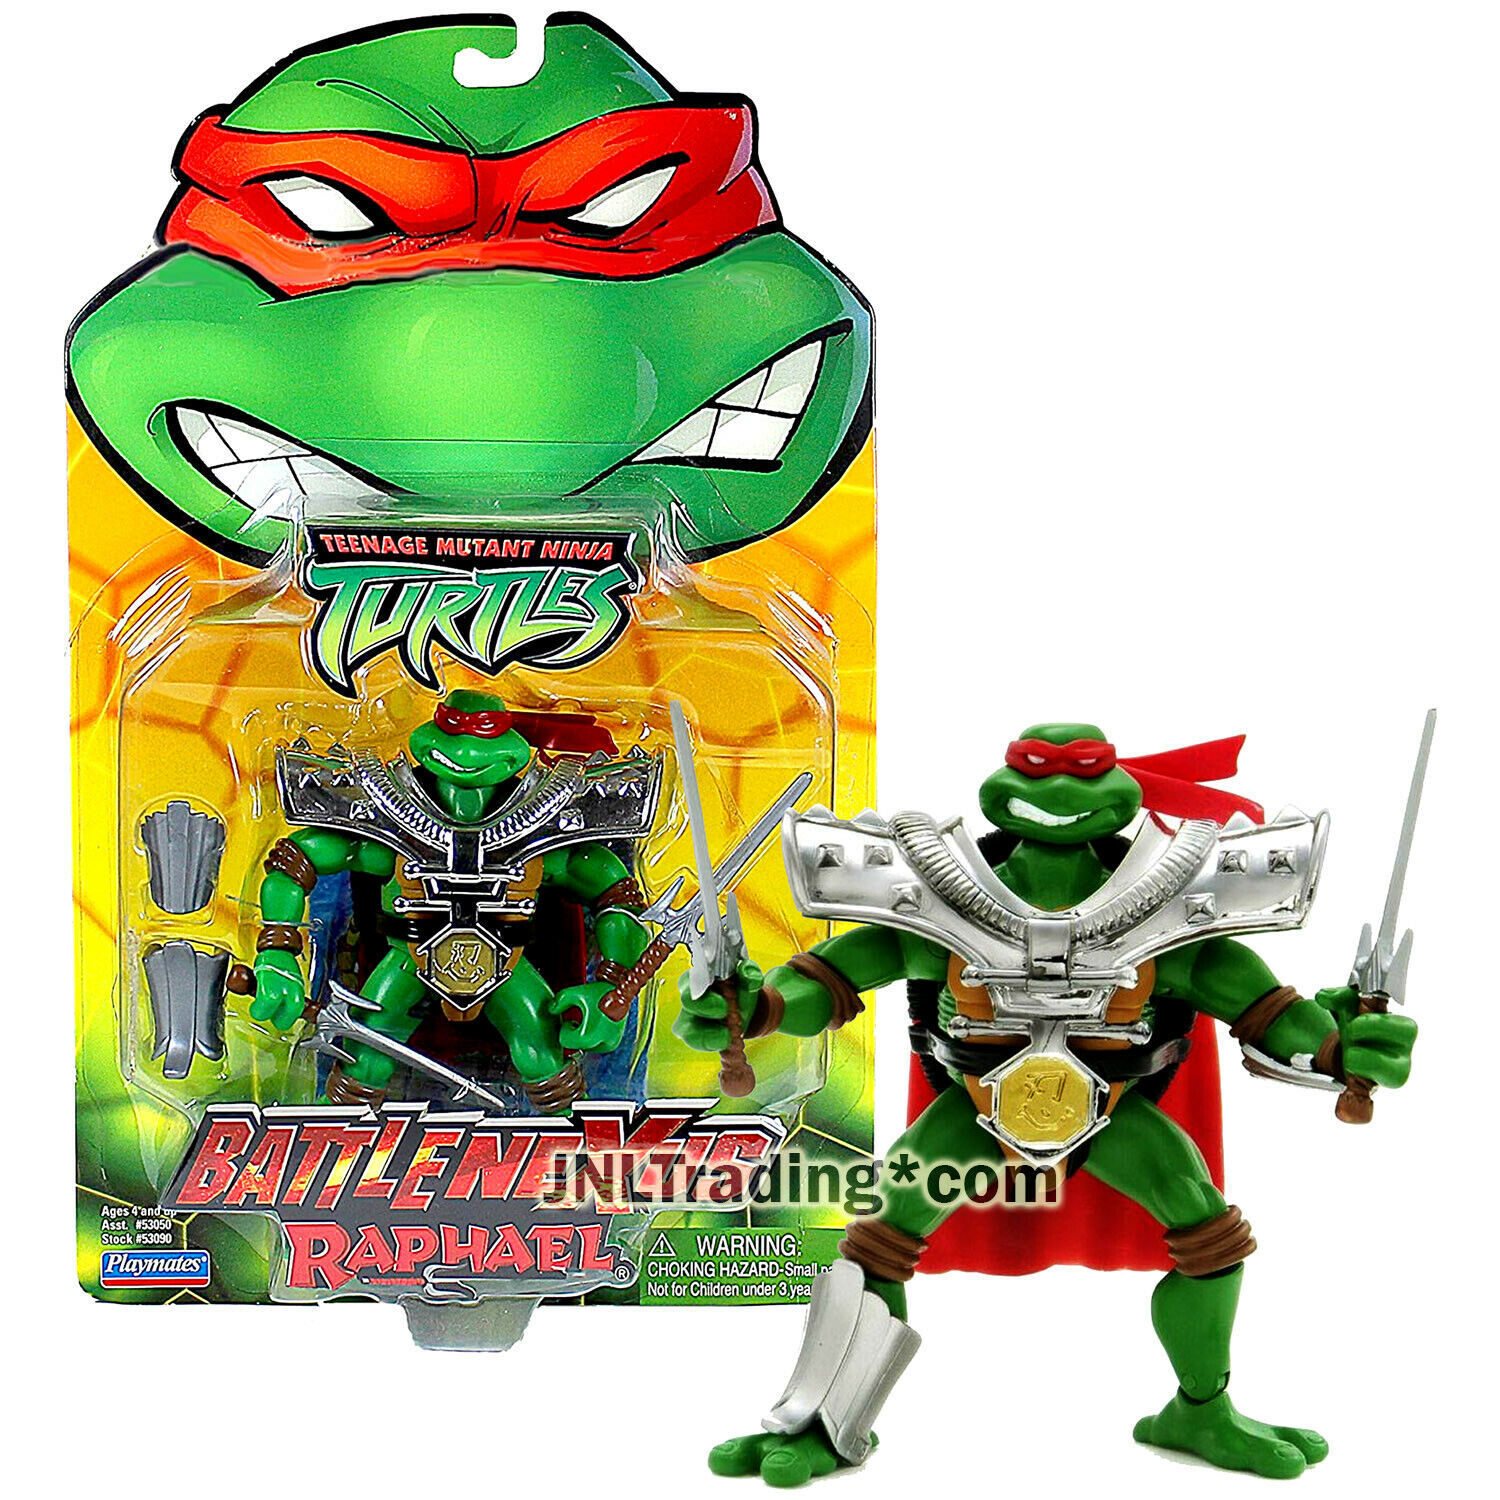 Primary image for Year 2004 Teenage Mutant Ninja Turtles TMNT Battle Nexus 5 Inch Figure - RAPHAEL